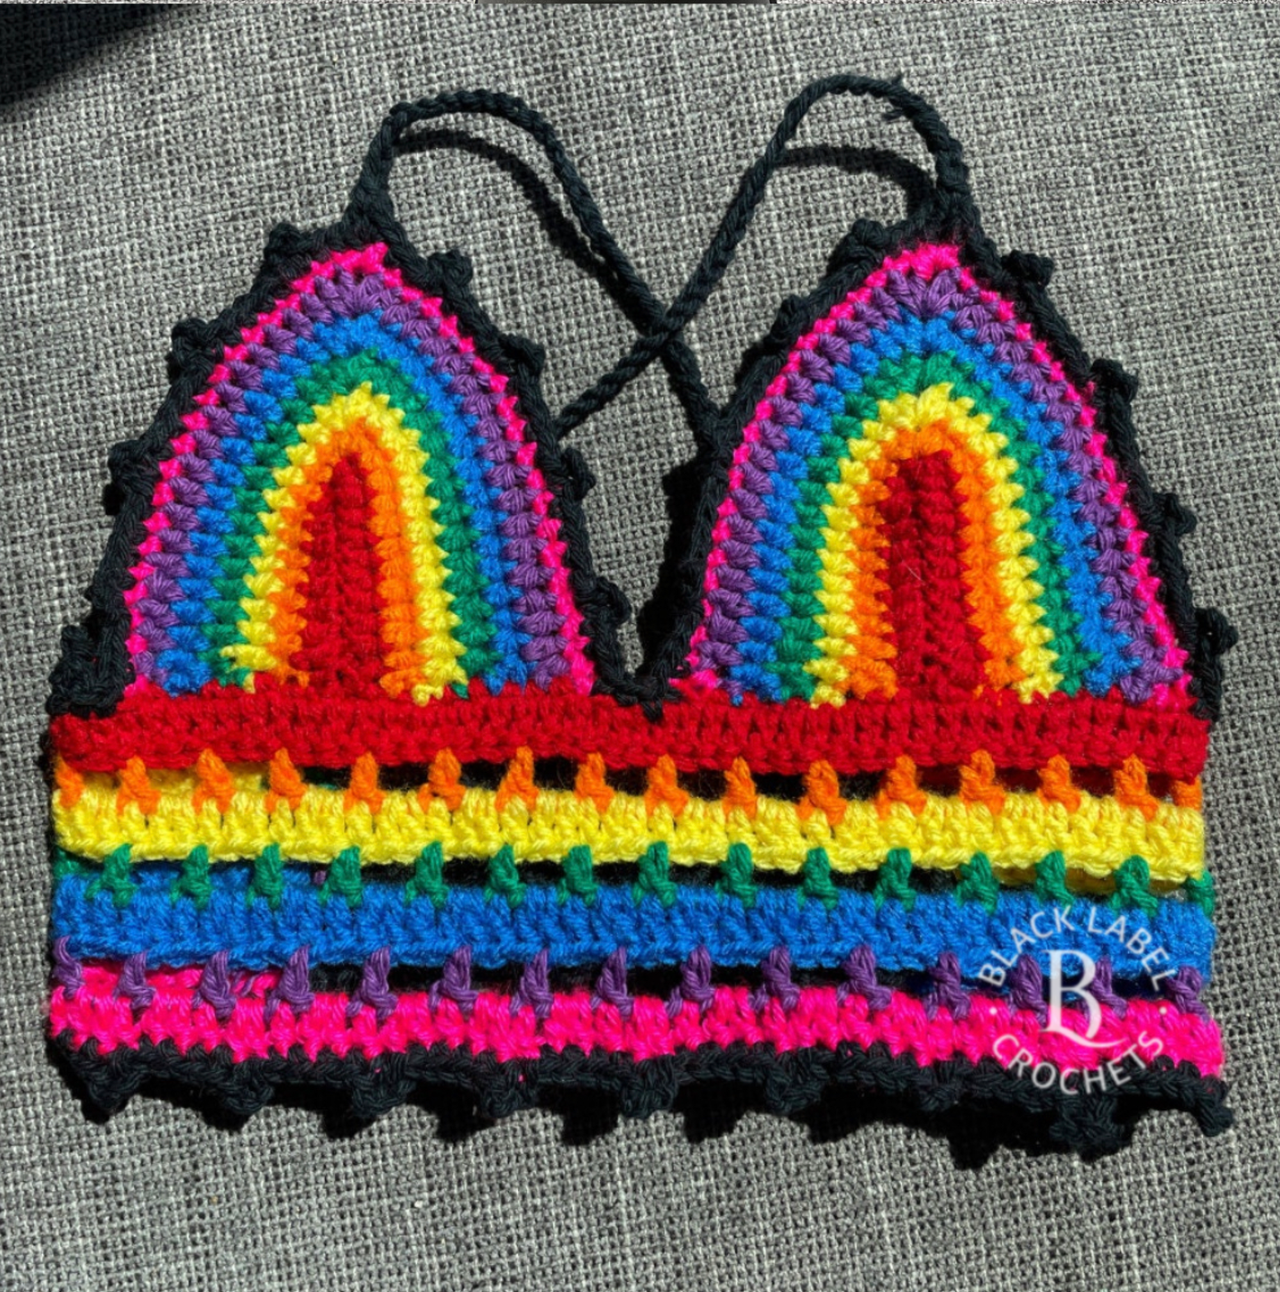 How to Crochet a Rainbow Top/ crochet rainbow bralette 